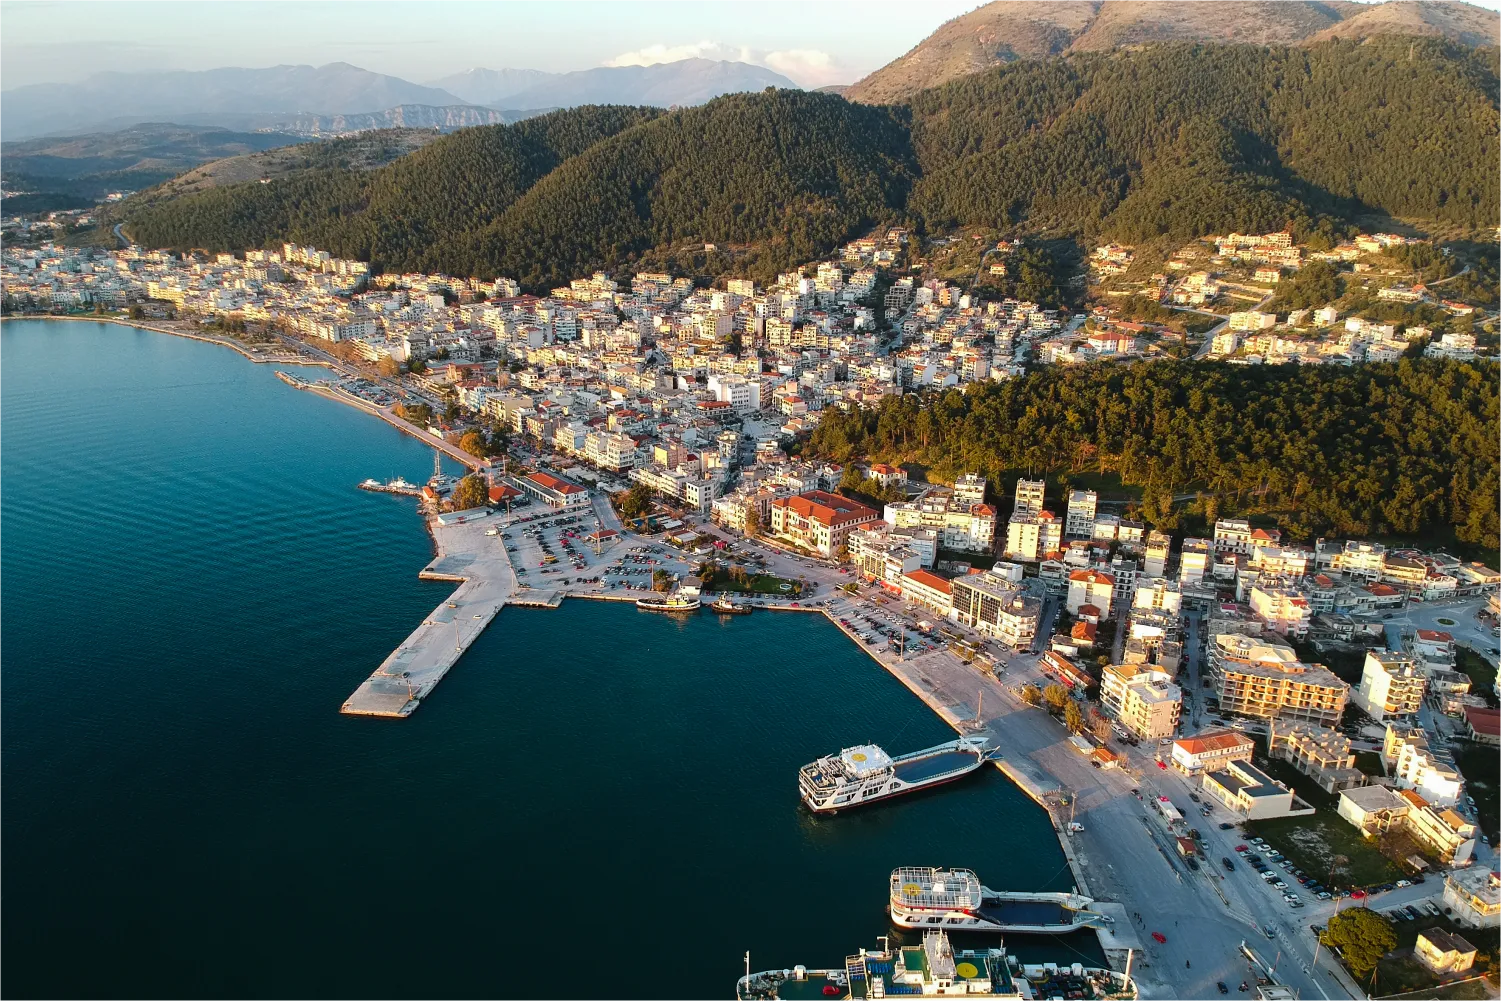 Vue aérienne du port de la ville d'Igoumenitsa